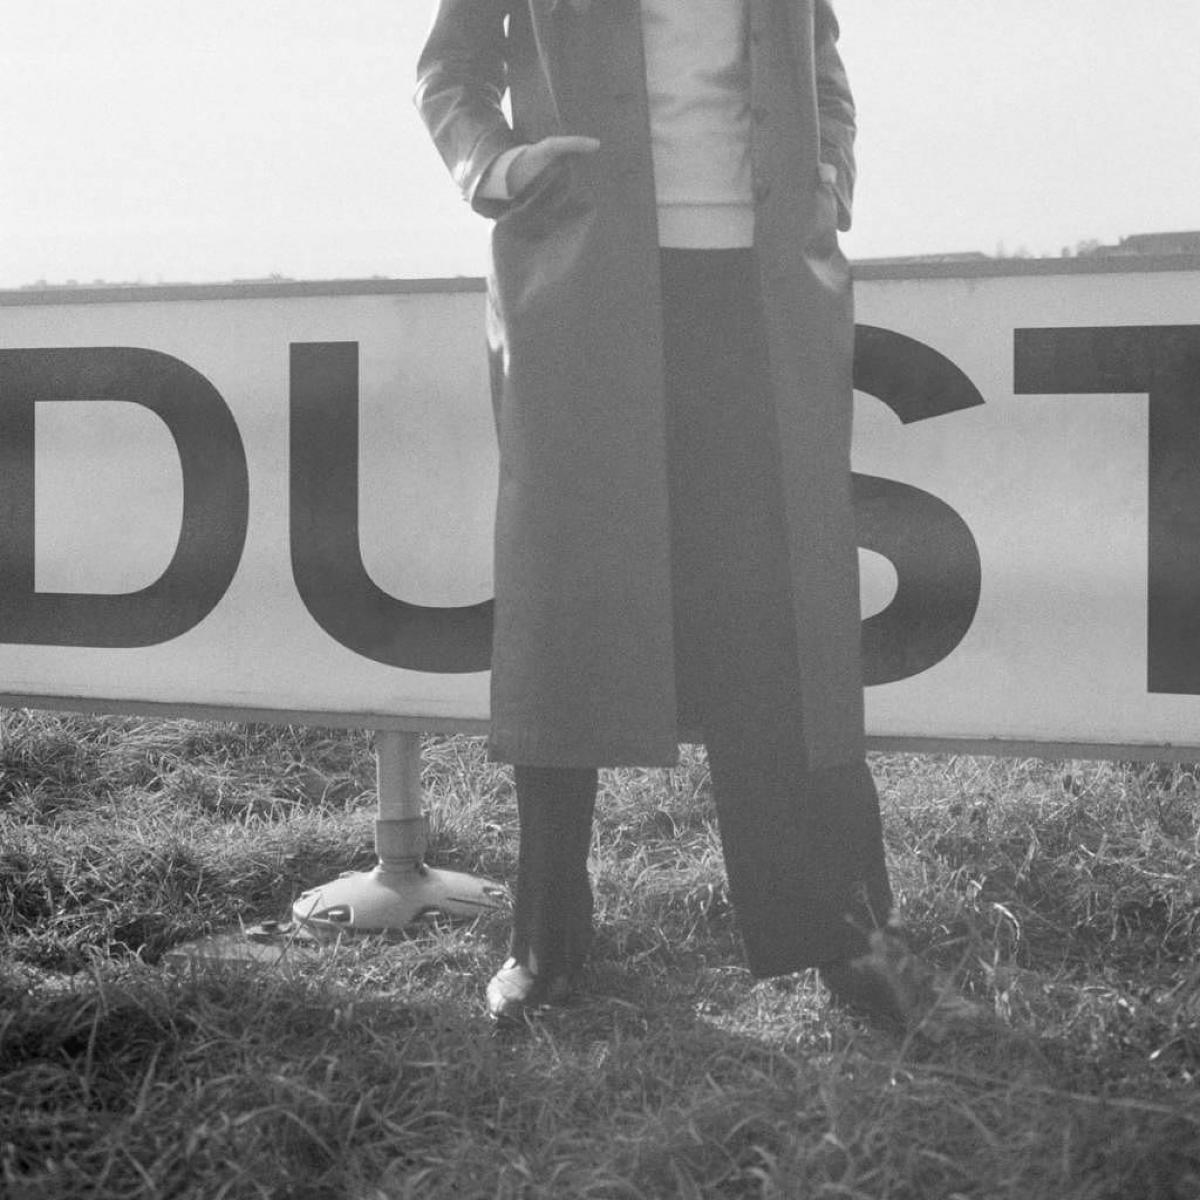 Cover of Laurel Halos album Dust (photo: Phillip Aumann, 2017)